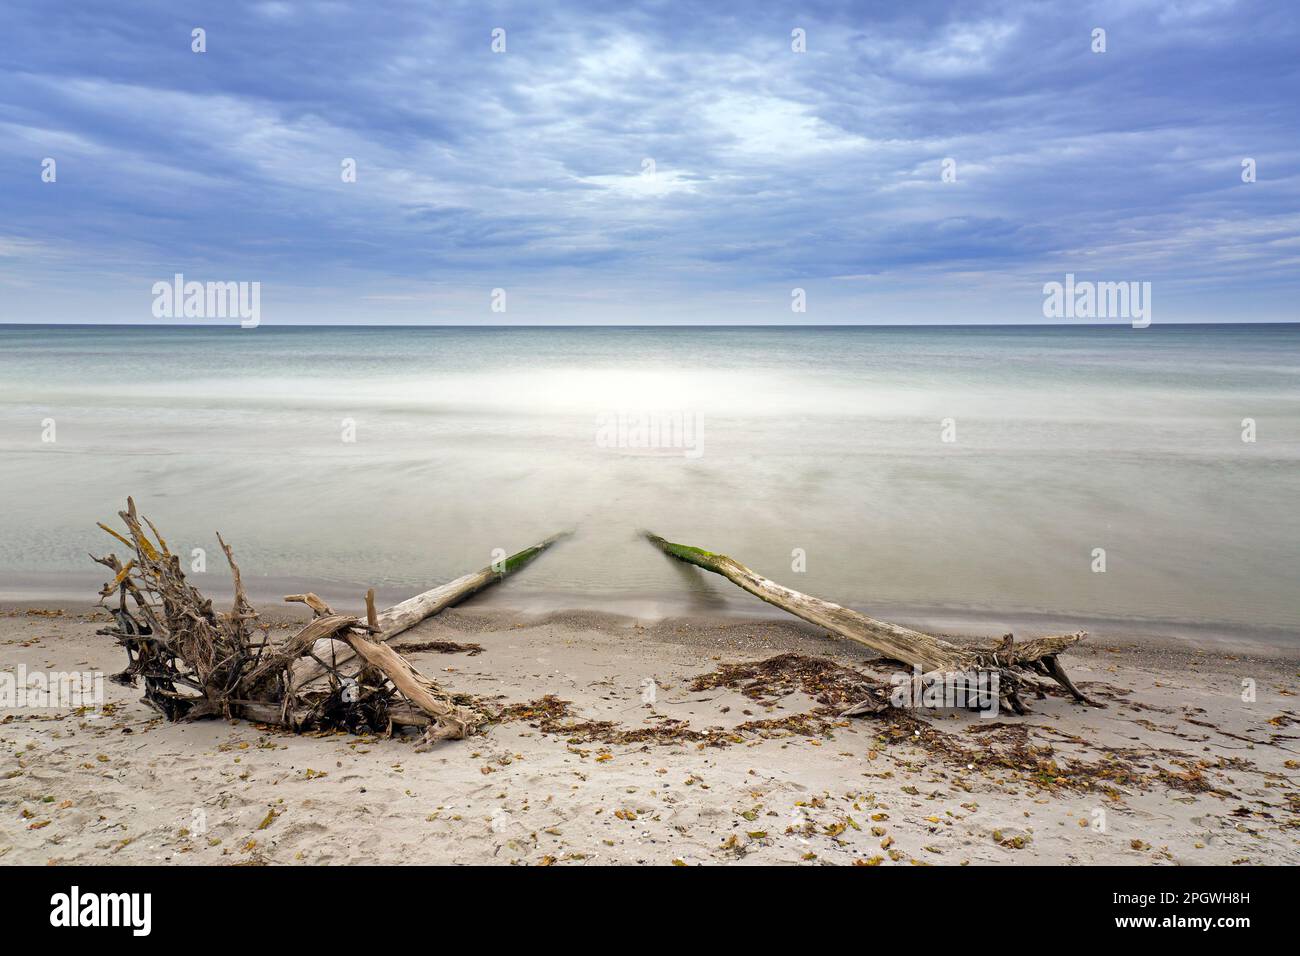 Deux arbres morts / bois flotté lavé à l'ashore sur la plage de sable le long de la mer Baltique à l'ouest de la région de la lagune de Pomerania NP, Mecklembourg-Poméranie-Occidentale, Allemagne Banque D'Images